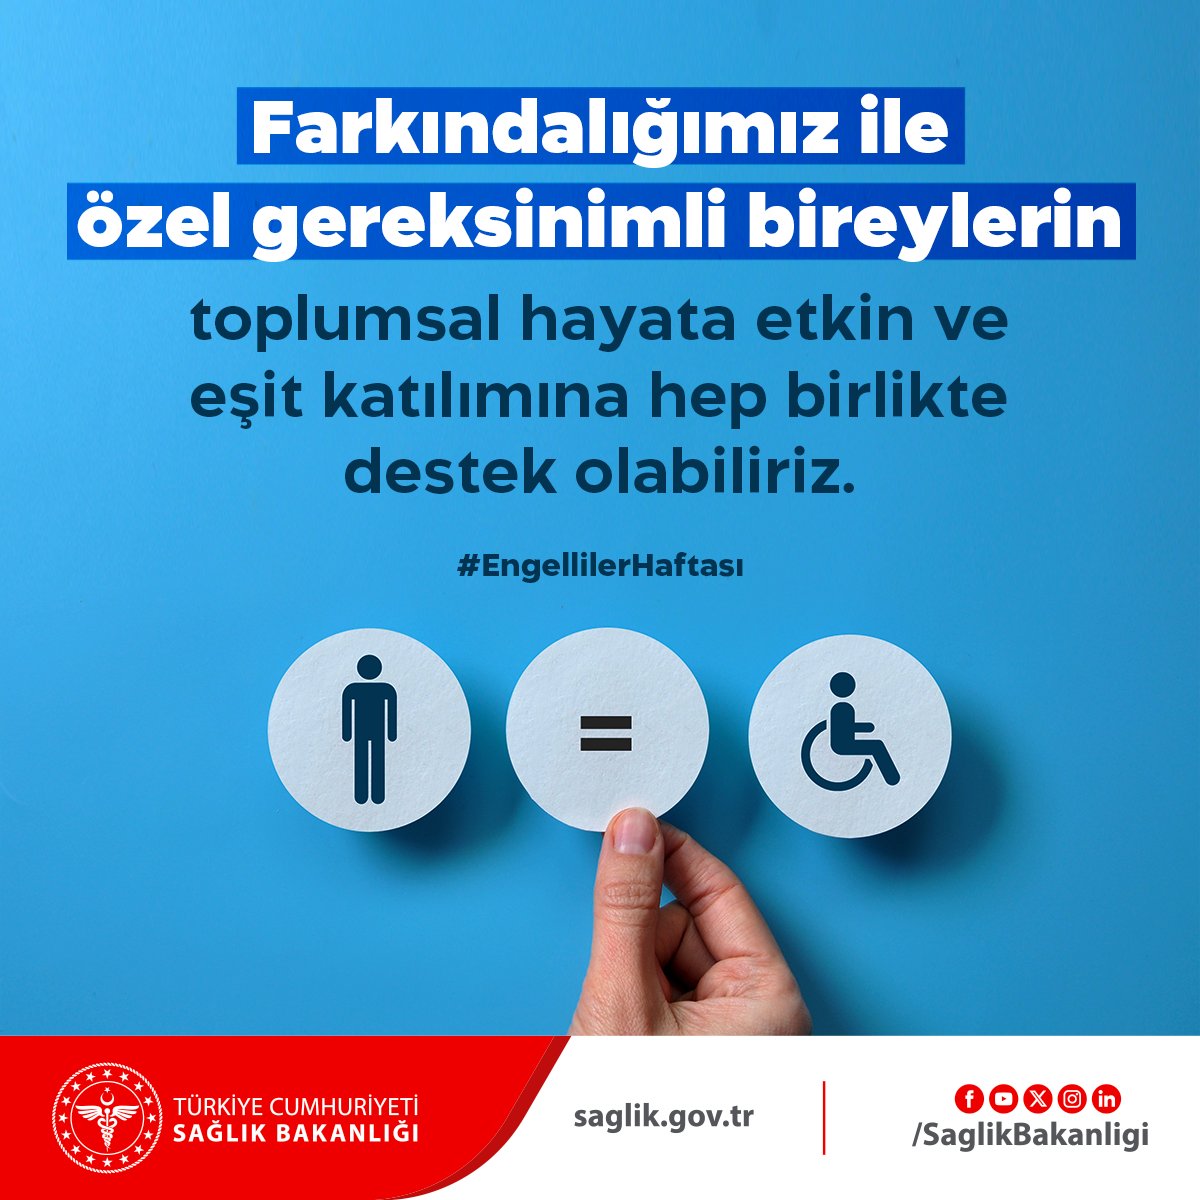 Farkındalığımız ile özel gereksinimli bireylerin toplumsal hayata etkin ve eşit katılımına hep birlikte destek olabiliriz. 
#EngellilerHaftası